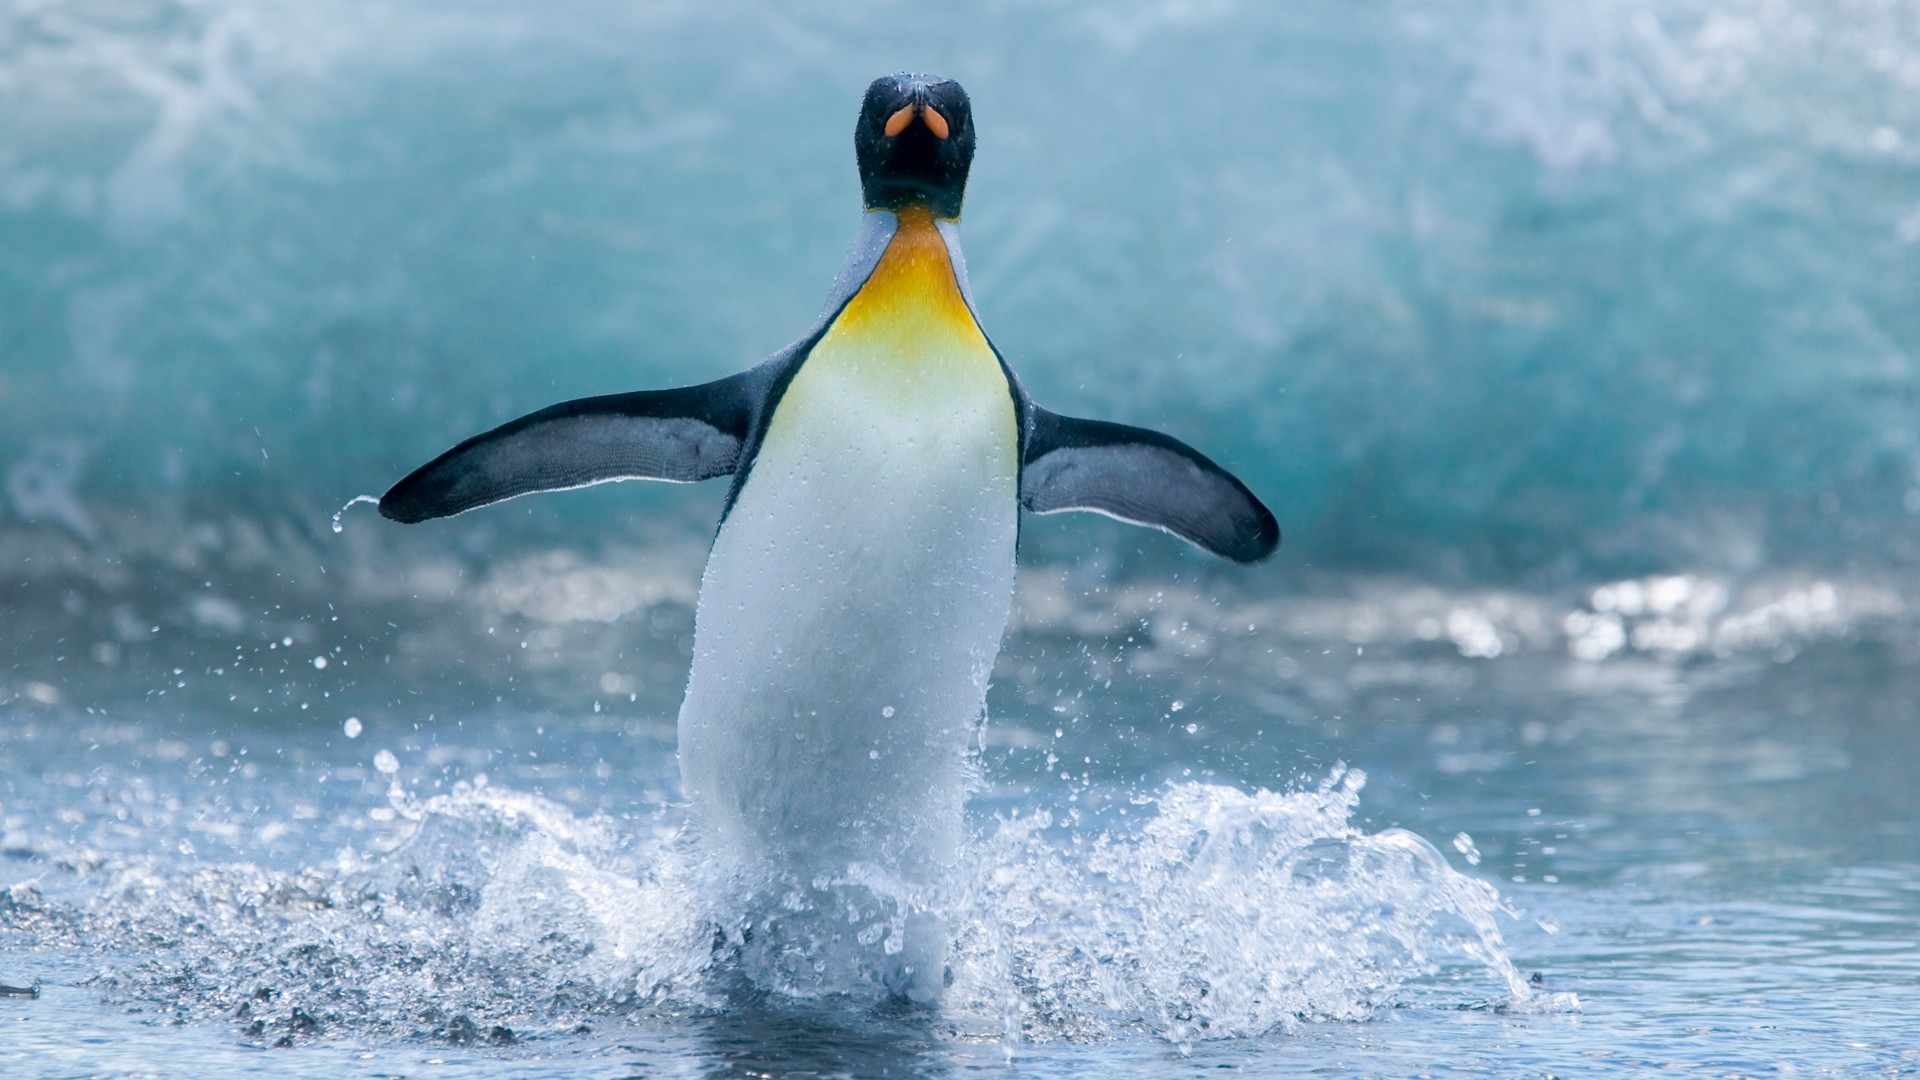 Tổng hợp các hình ảnh về chim cánh cụt dễ thương – Đặc điểm của loài chim cánh cụt - [Kích thước hình ảnh: 1920x1080 px]